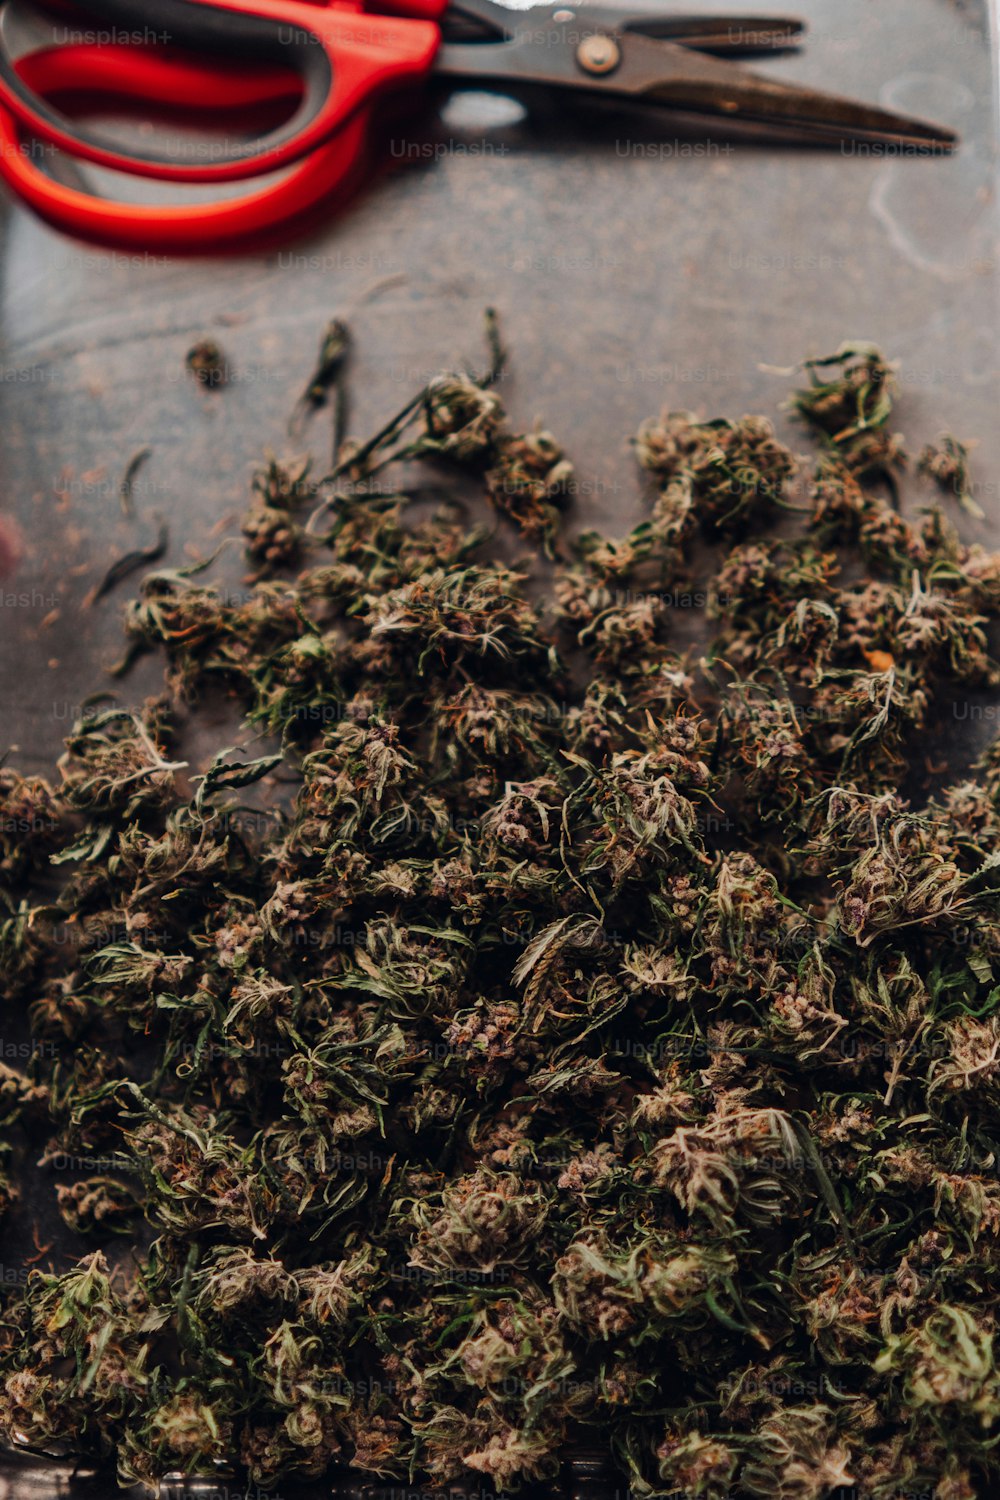 a pile of marijuana